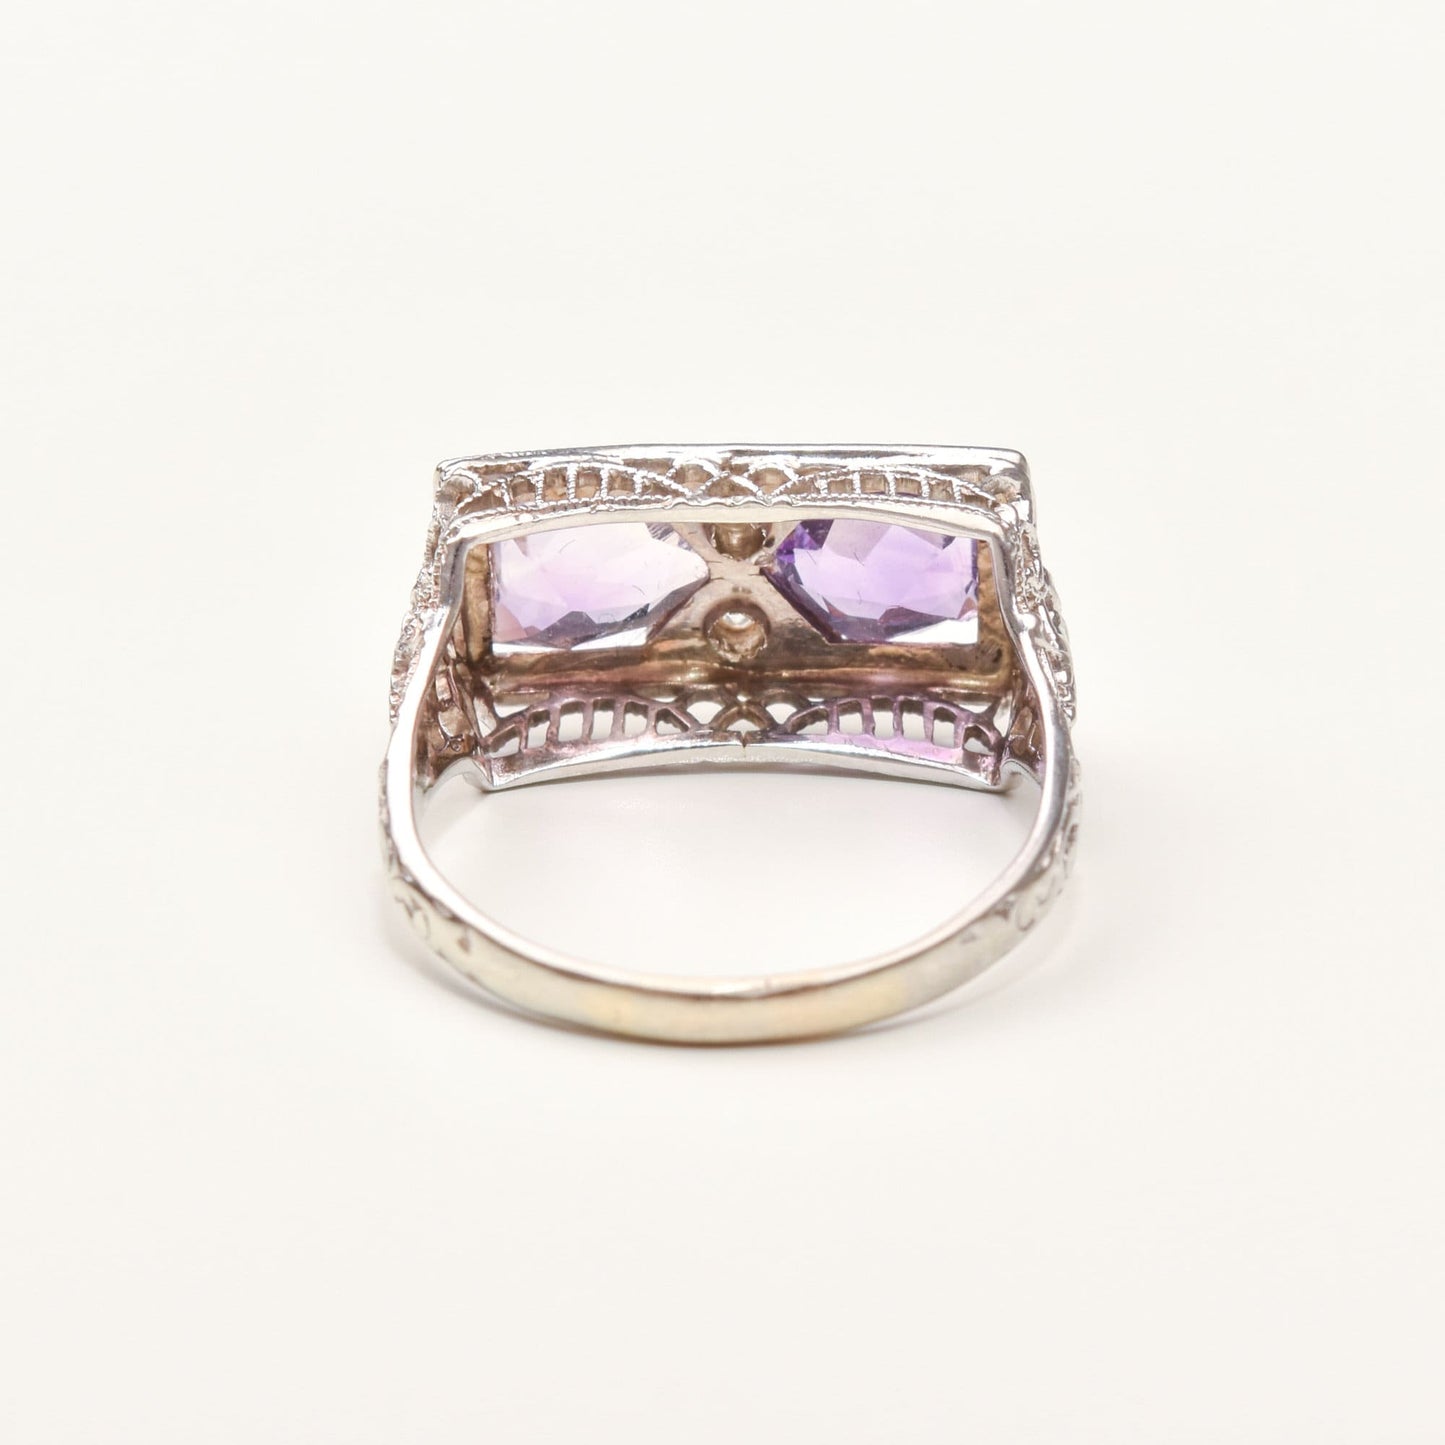 Art Deco 14K White Gold Diamond Amethyst Filigree Ring, Rectangular Dinner Ring, Size 6 1/4 US